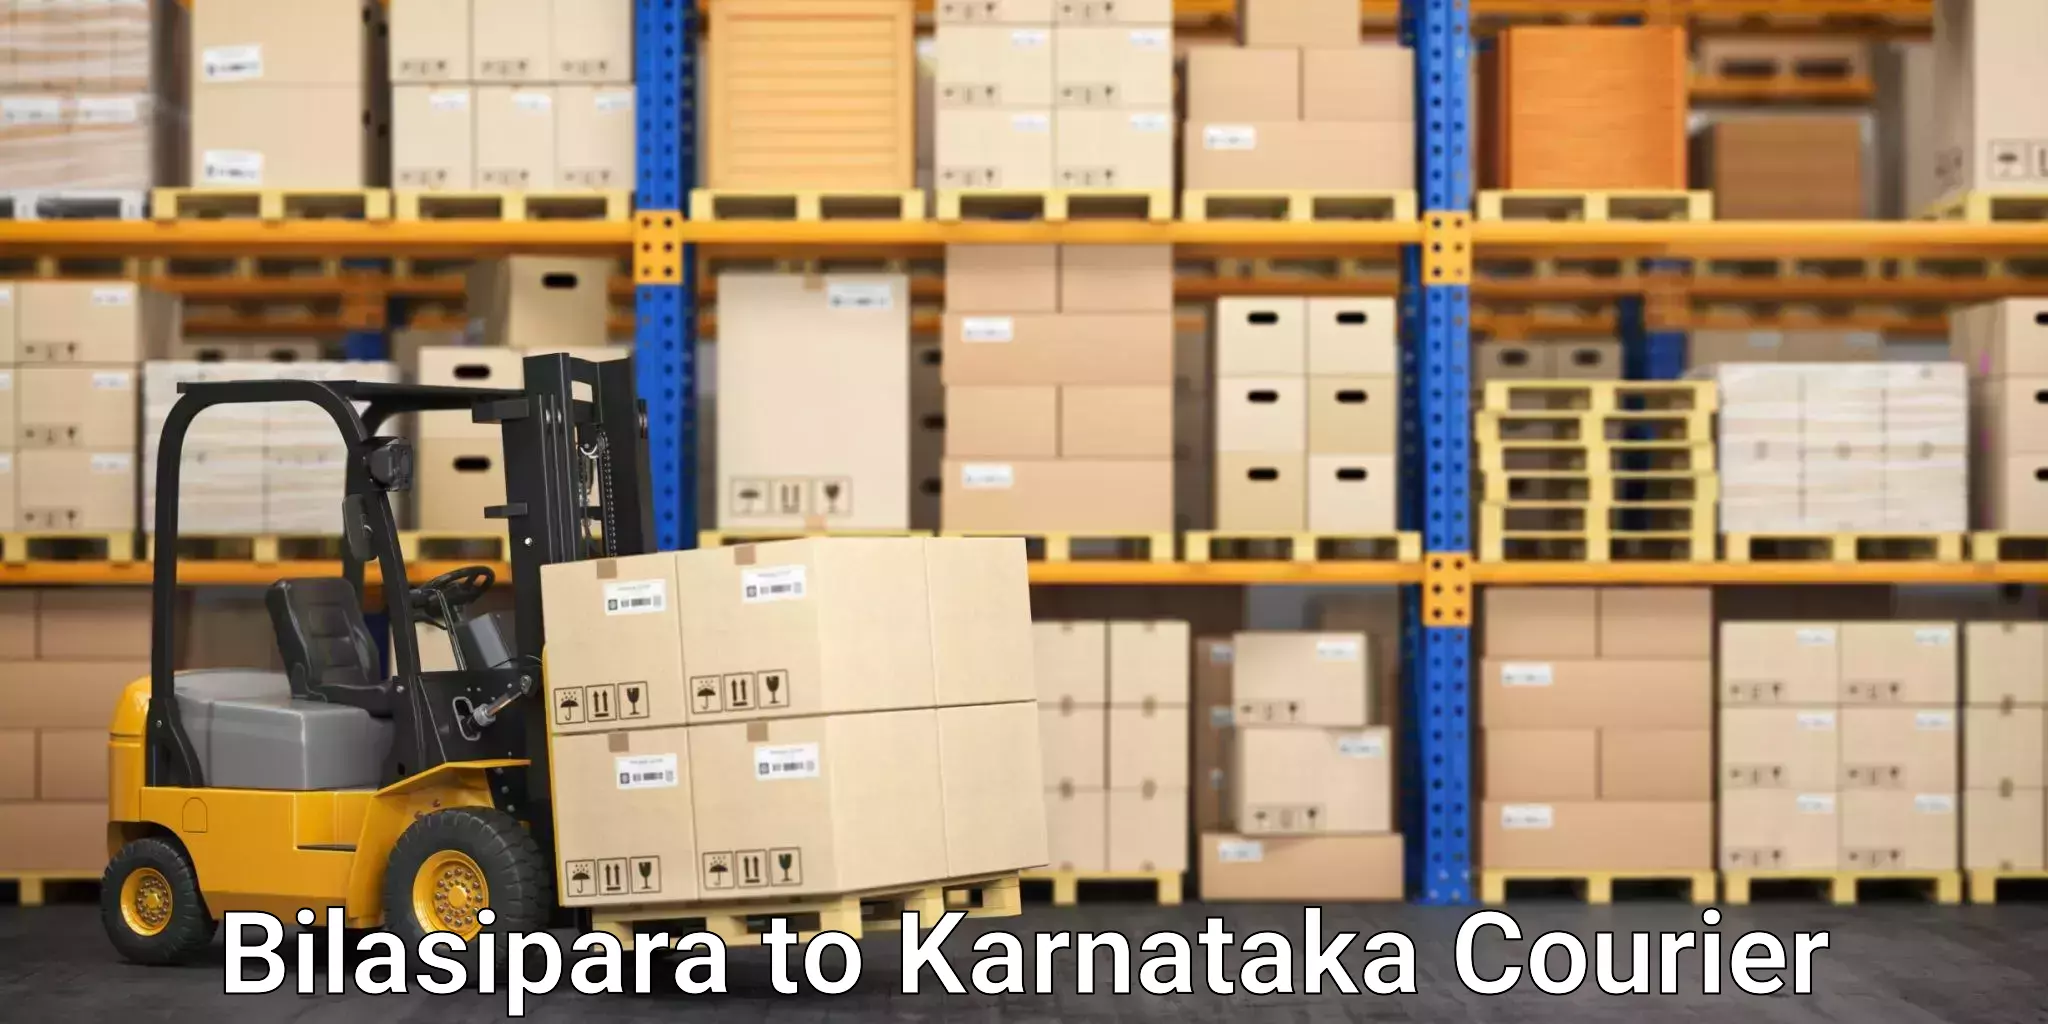 High-capacity shipping options Bilasipara to Karnataka